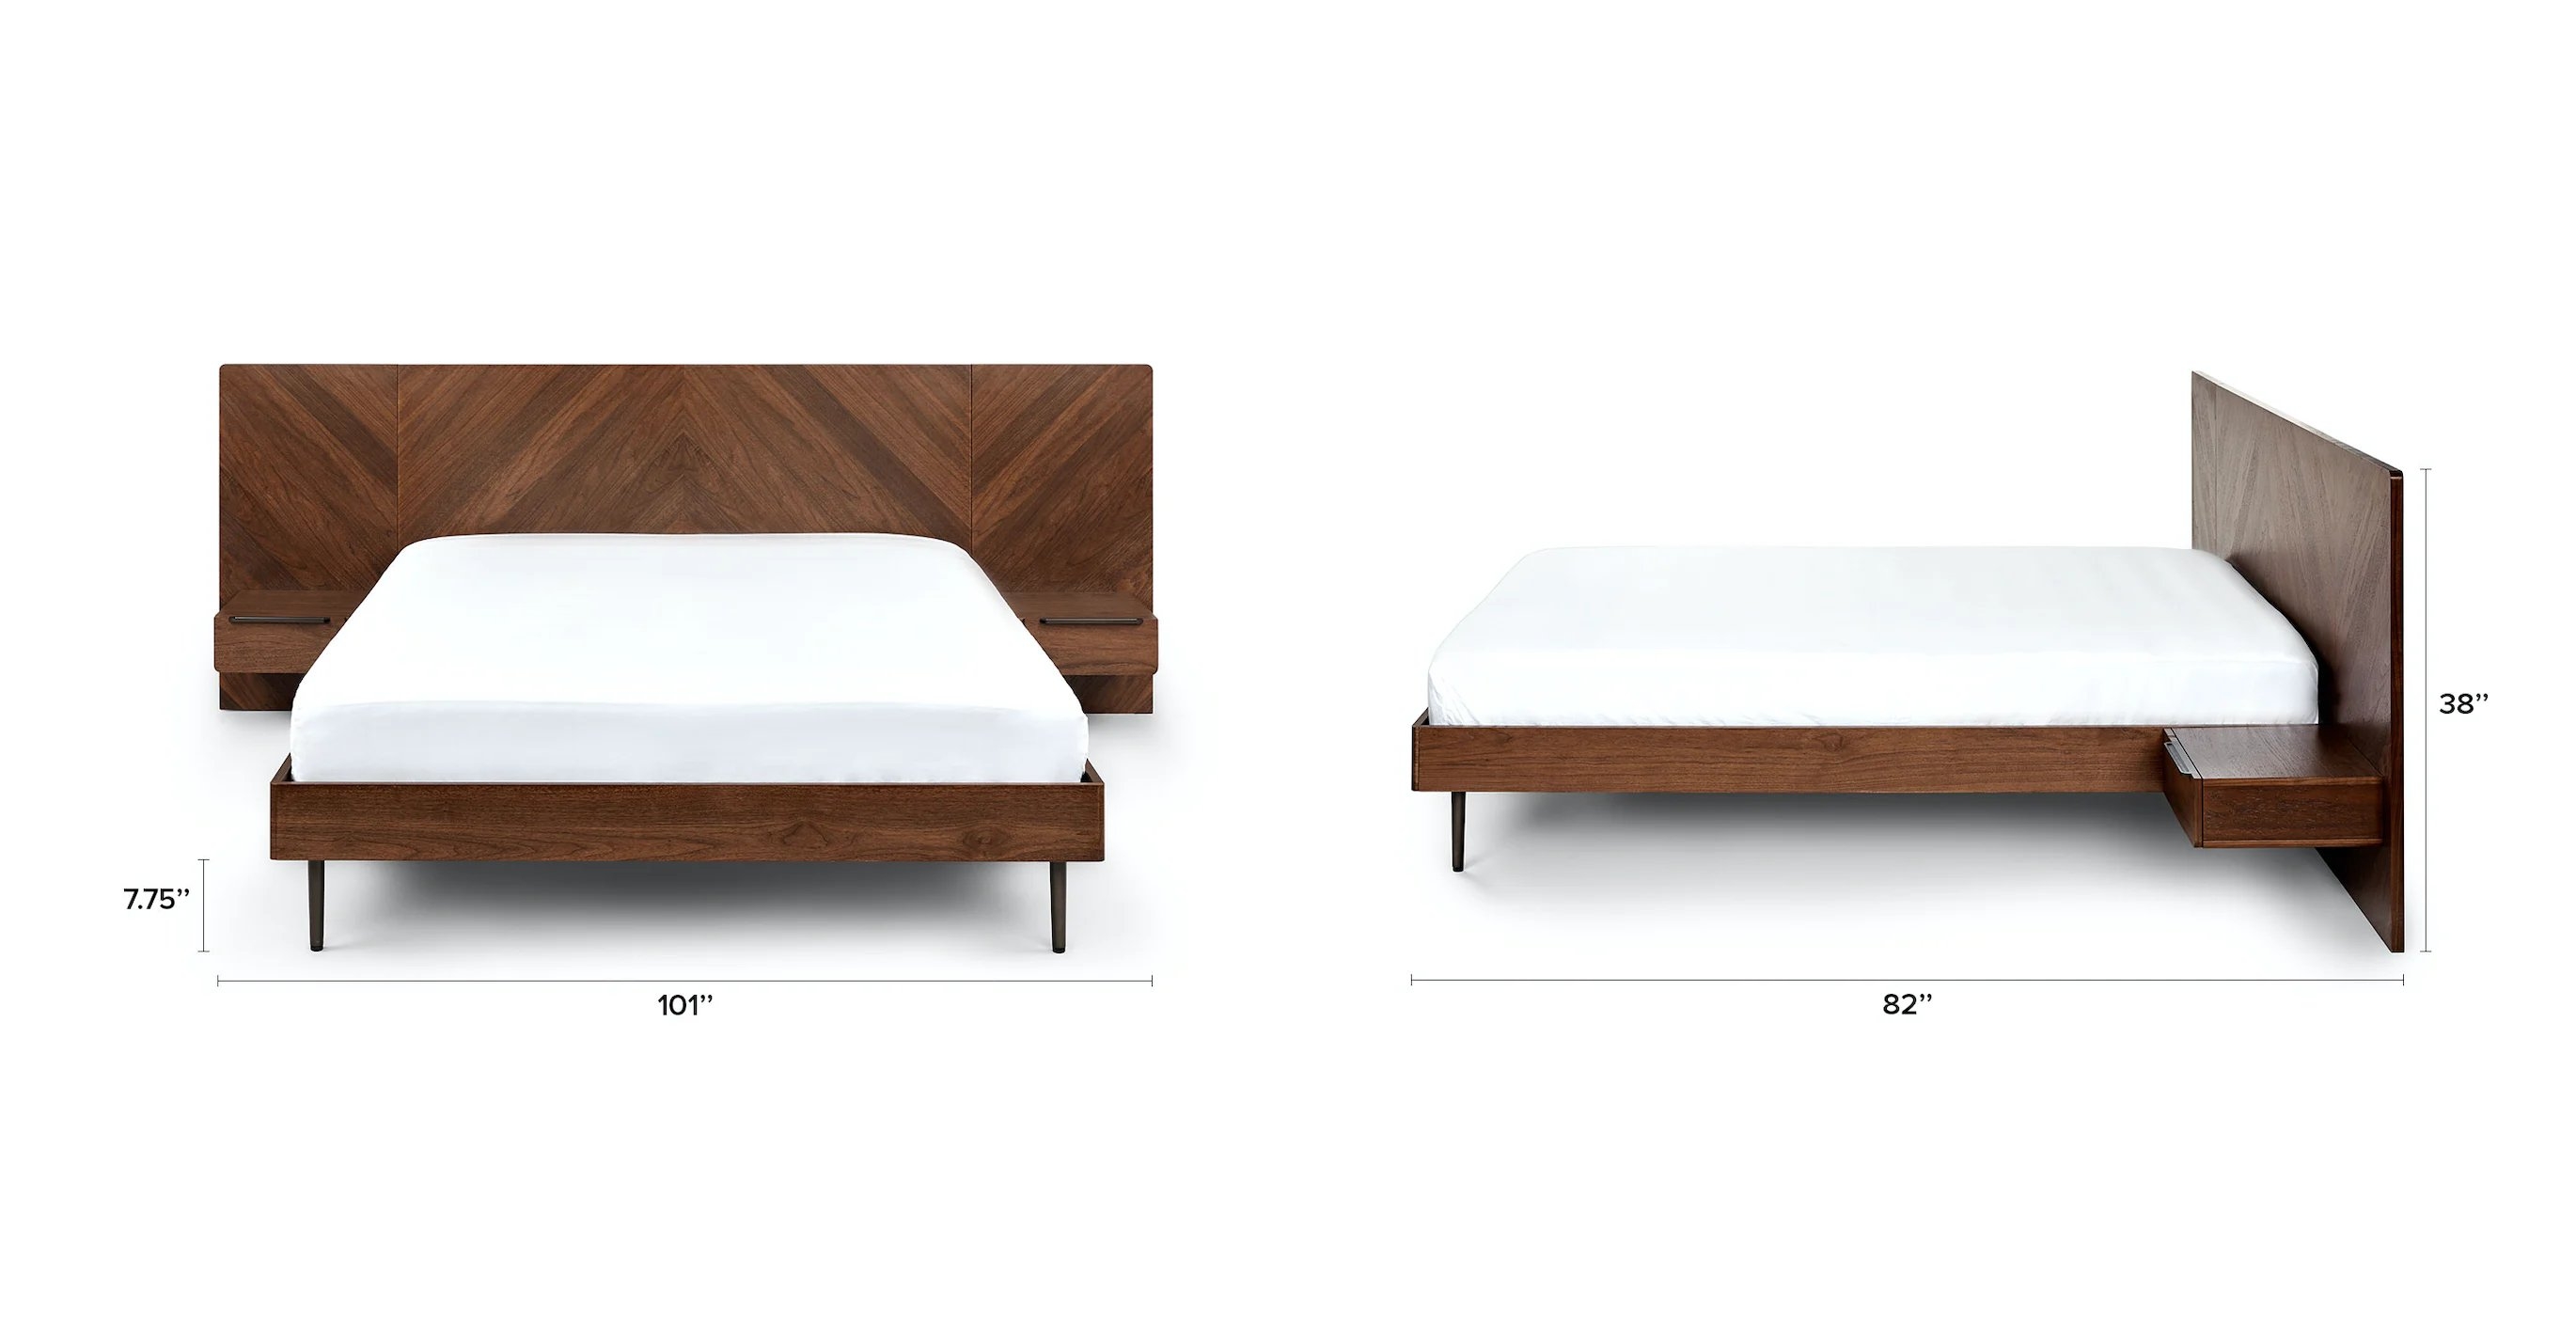 Nera Walnut Queen Bed with Nightstands - Image 9